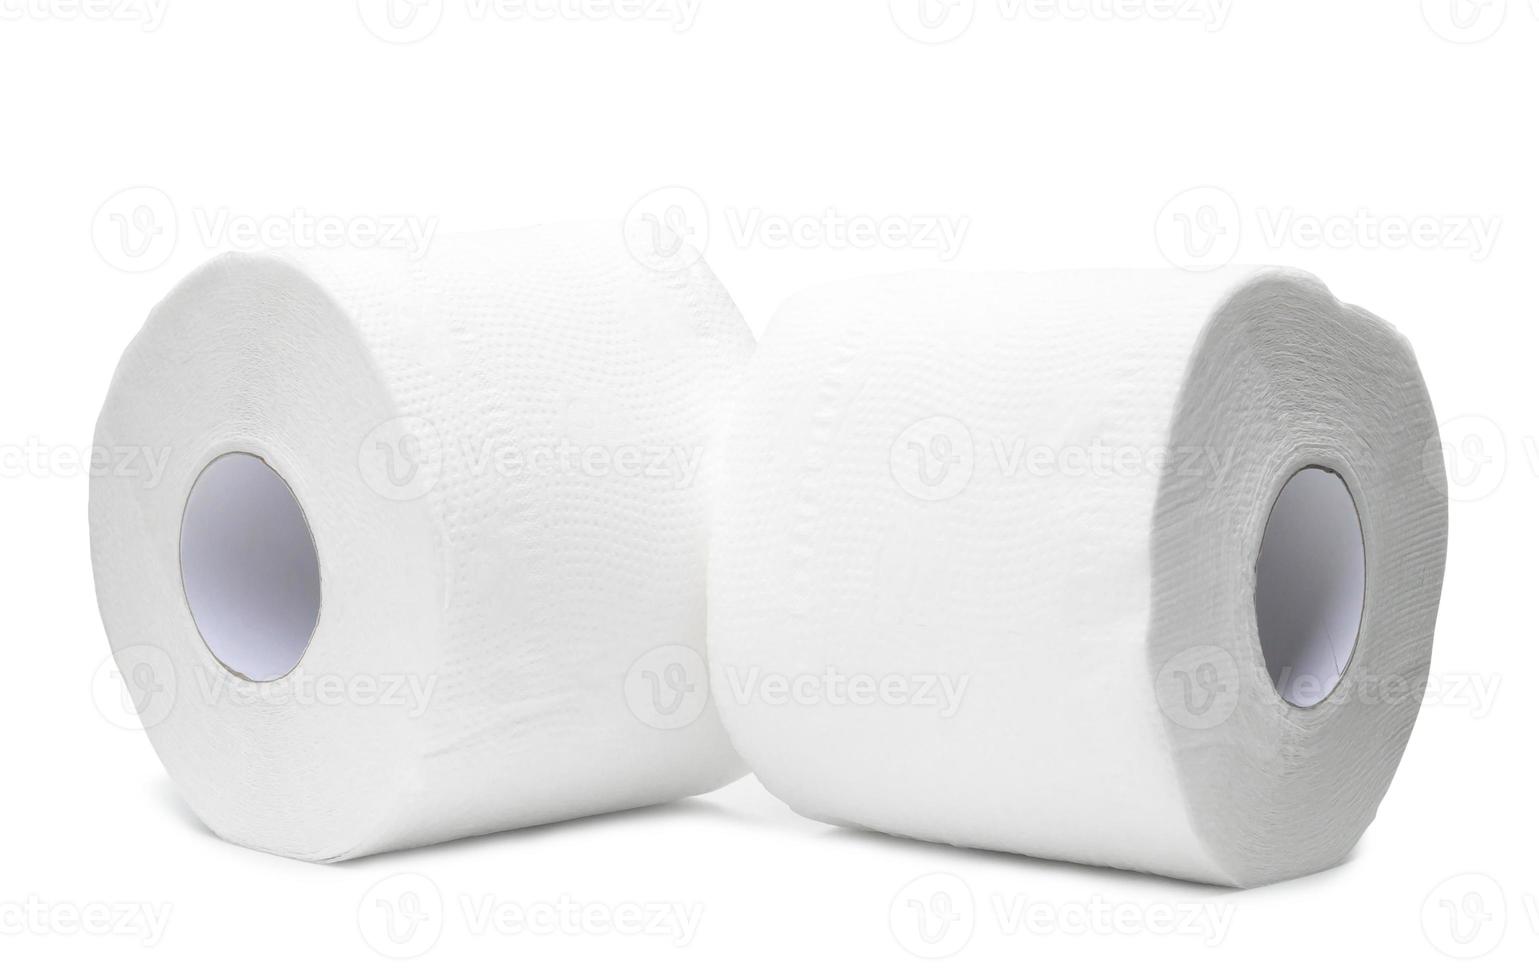 deux rouleaux de papier de soie blanc ou de serviette à utiliser dans les toilettes ou les toilettes isolés sur fond blanc avec un tracé de détourage photo